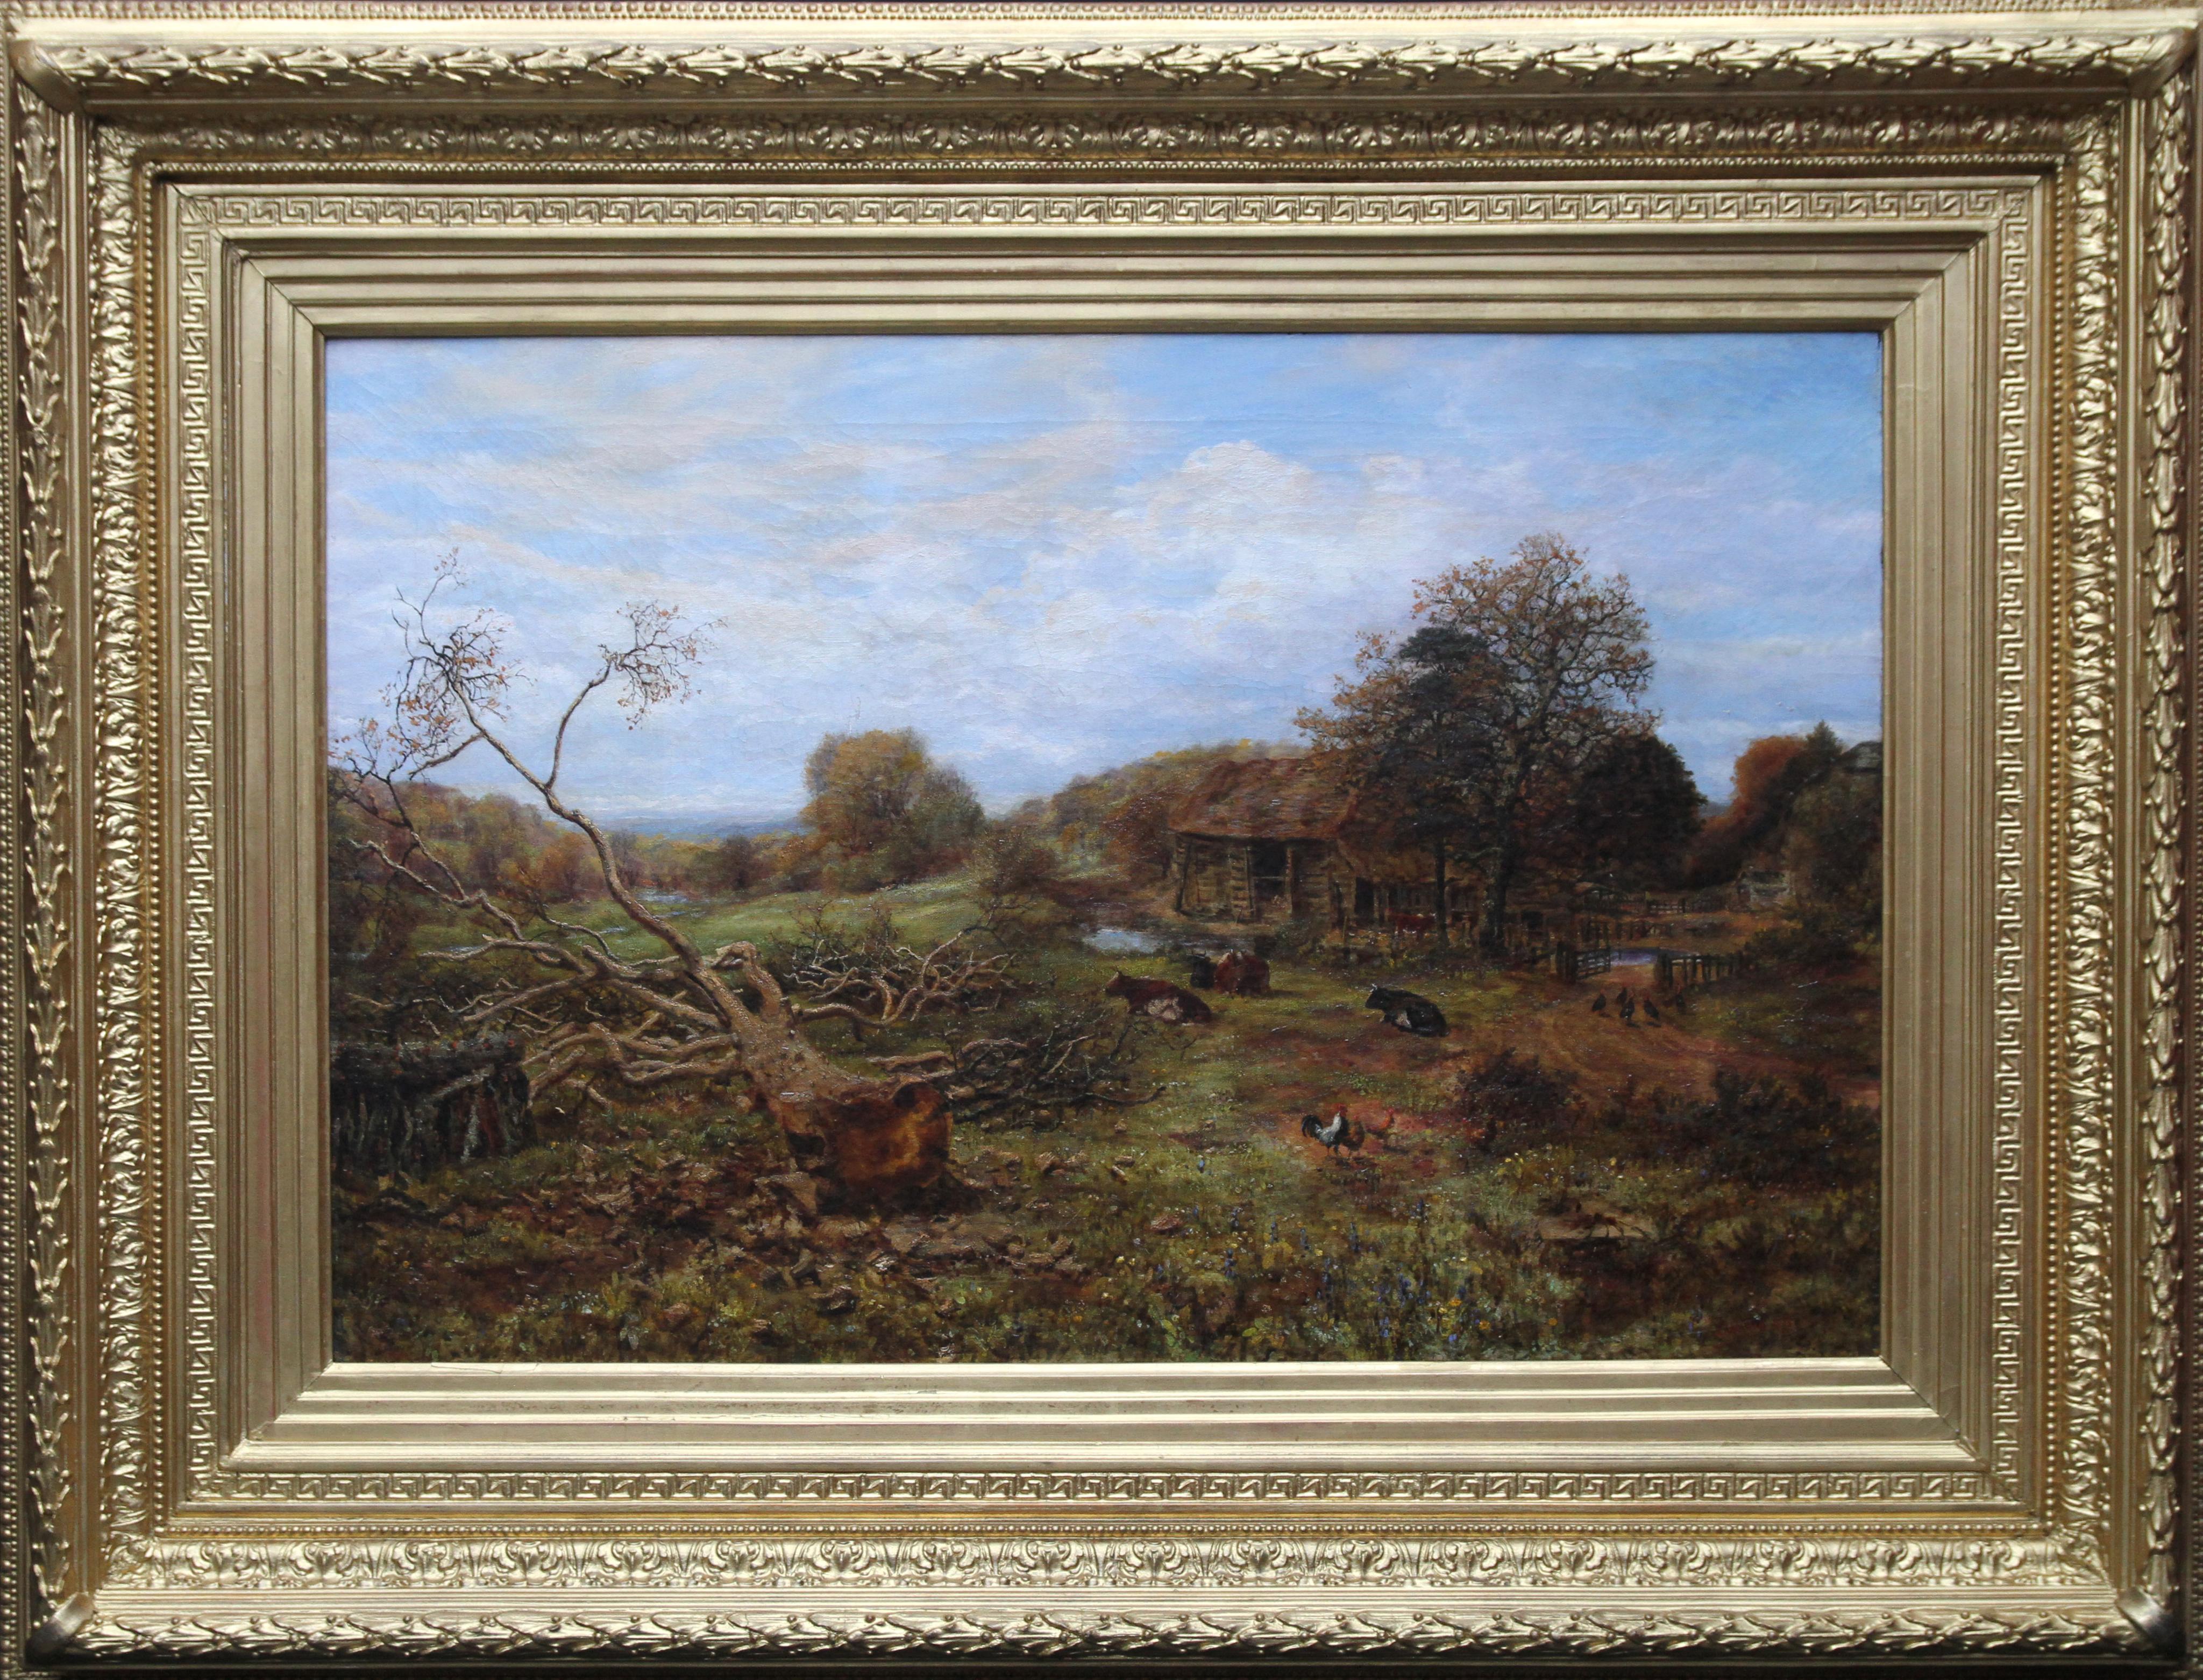 Landscape Painting George William Mote - Paysage avec bétail - Surrey - Art victorien britannique Peinture à l'huile du 19e siècle